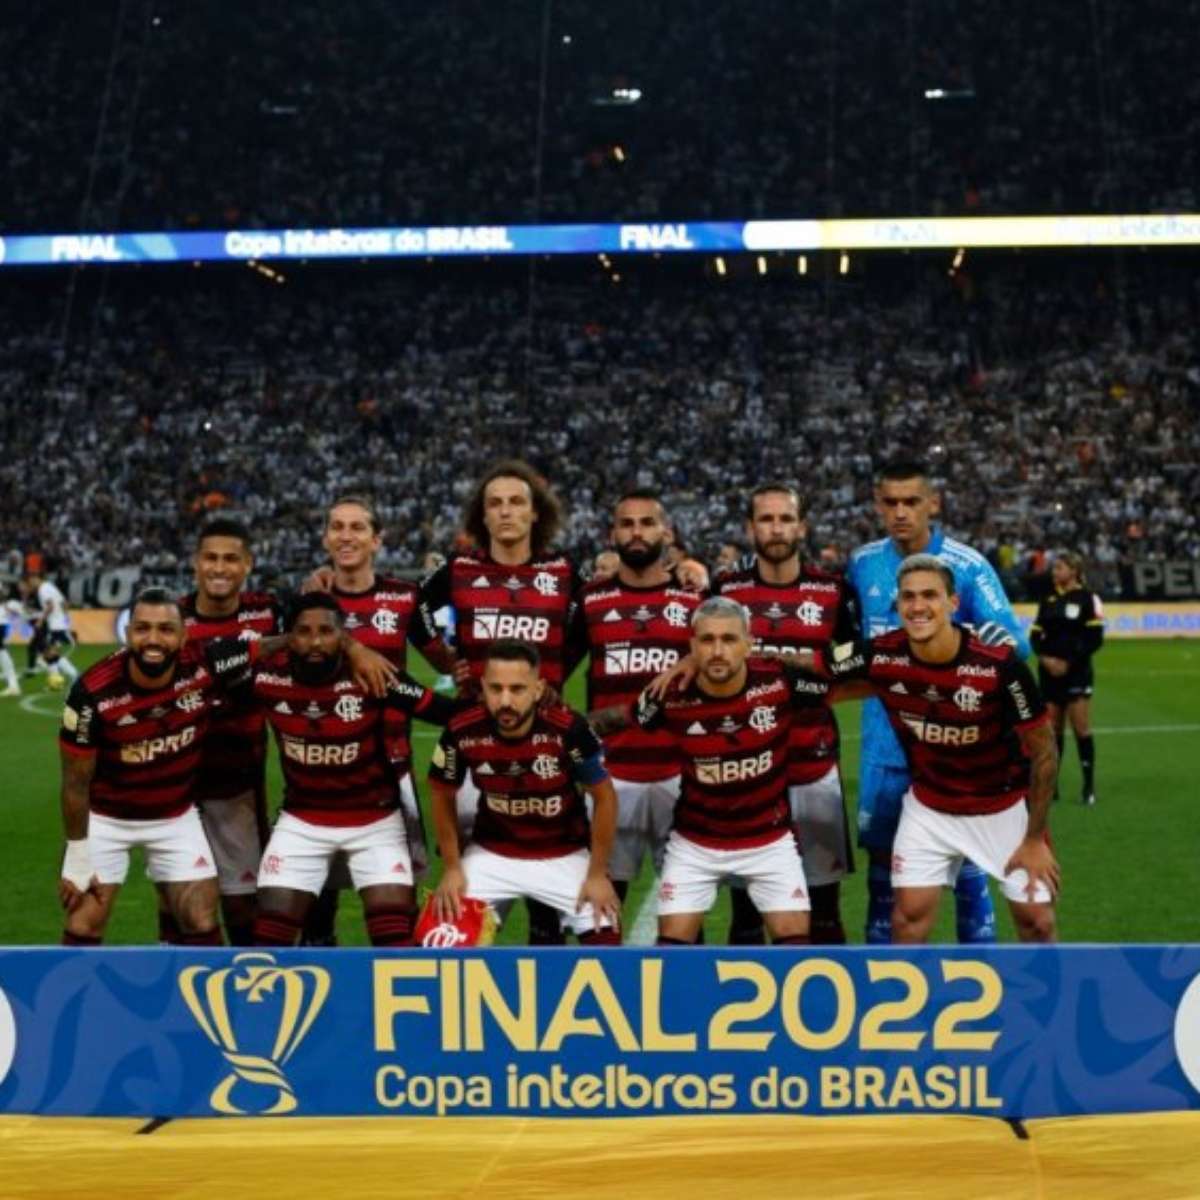 Domingo, na final da Copa do Brasil, Flamengo e São Paulo, feijoada grátis  na República - AcreNews